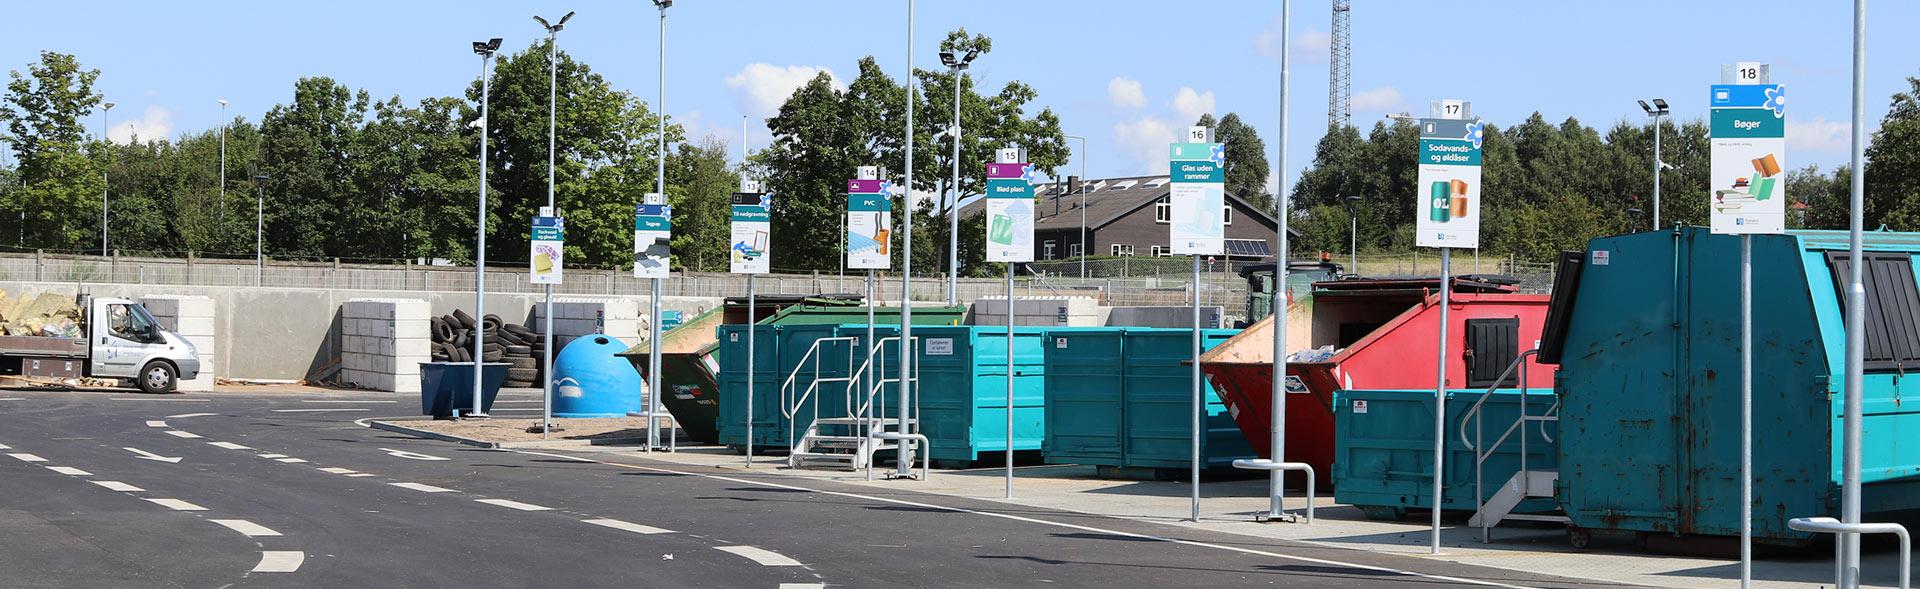 Containere og skilte på genbrugsplads i Hammel